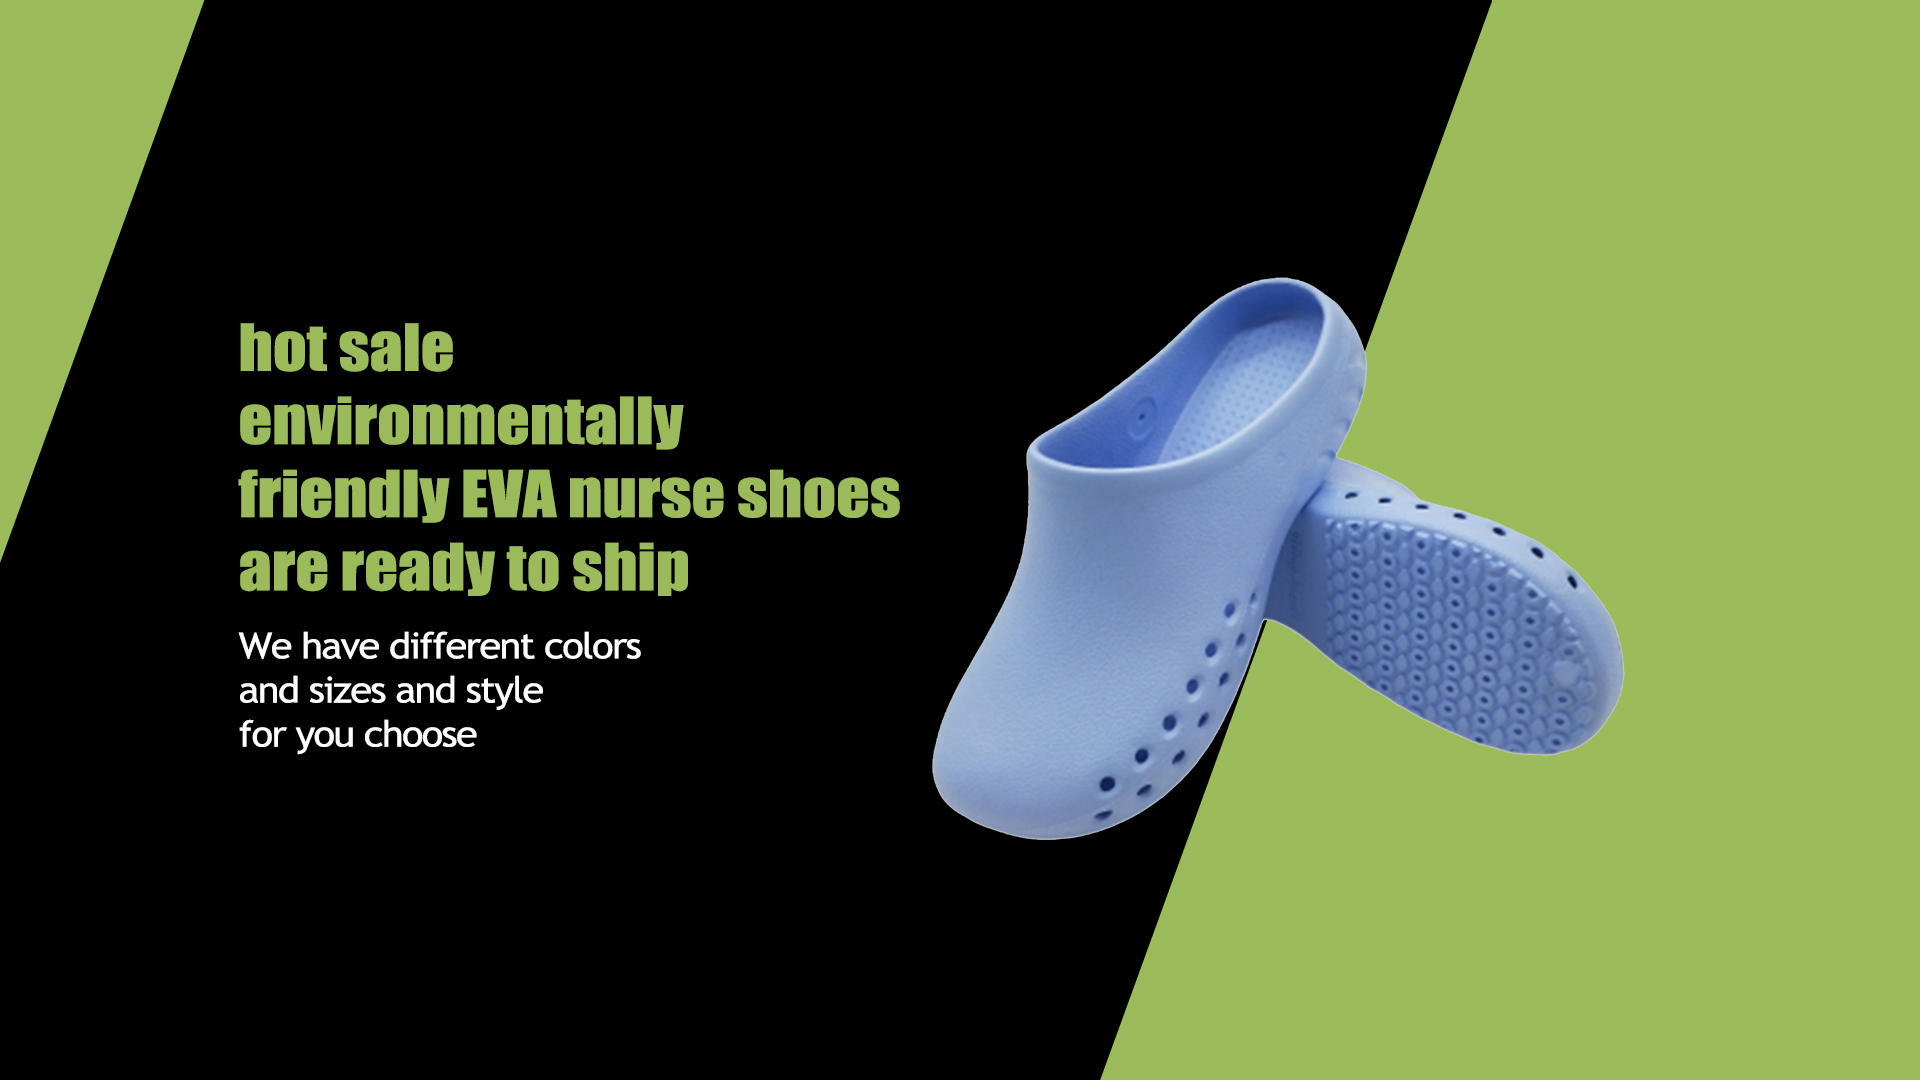 hete verkoop milieuvriendelijke EVA-verpleegstersschoenen zijn klaar om te verzenden!